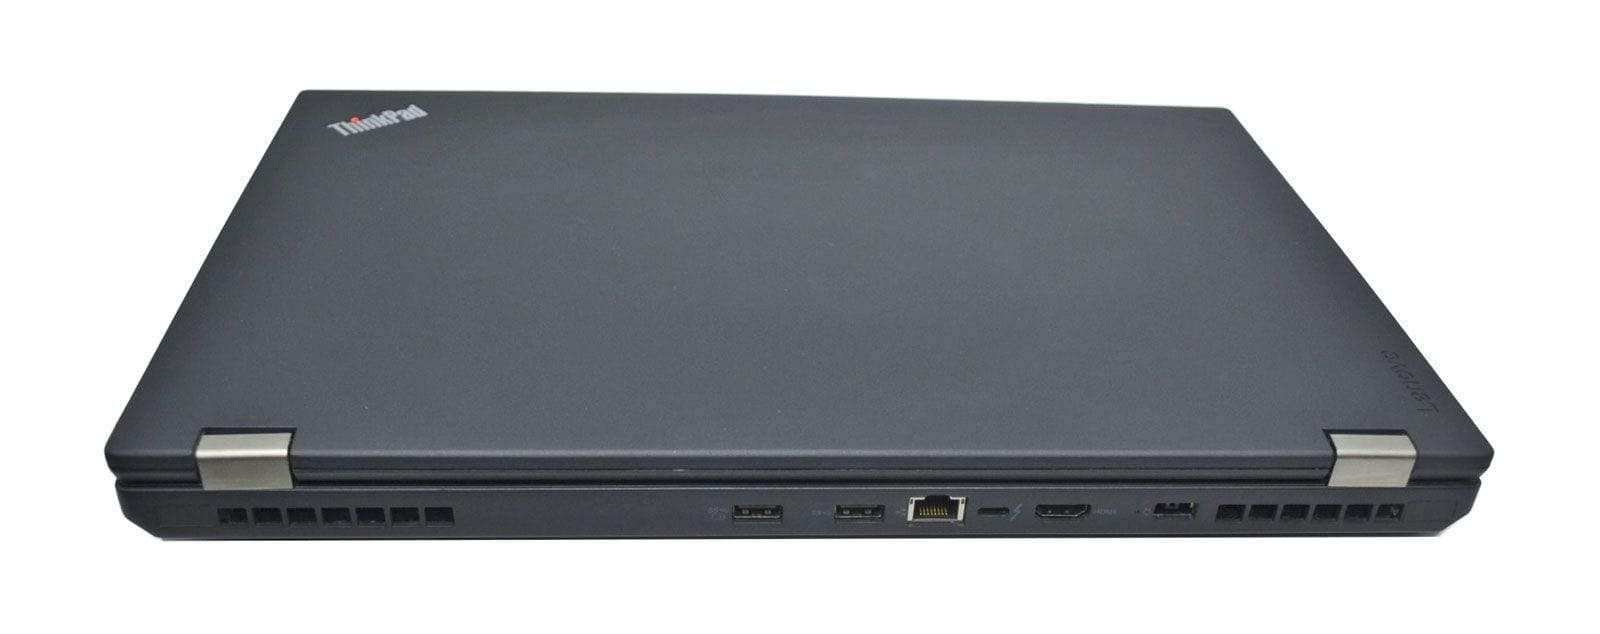 Lenovo Thinkpad P50 Workstation: Core i7-6820HQ, 16GB RAM, 256GB+HDD, Quadro - CruiseTech